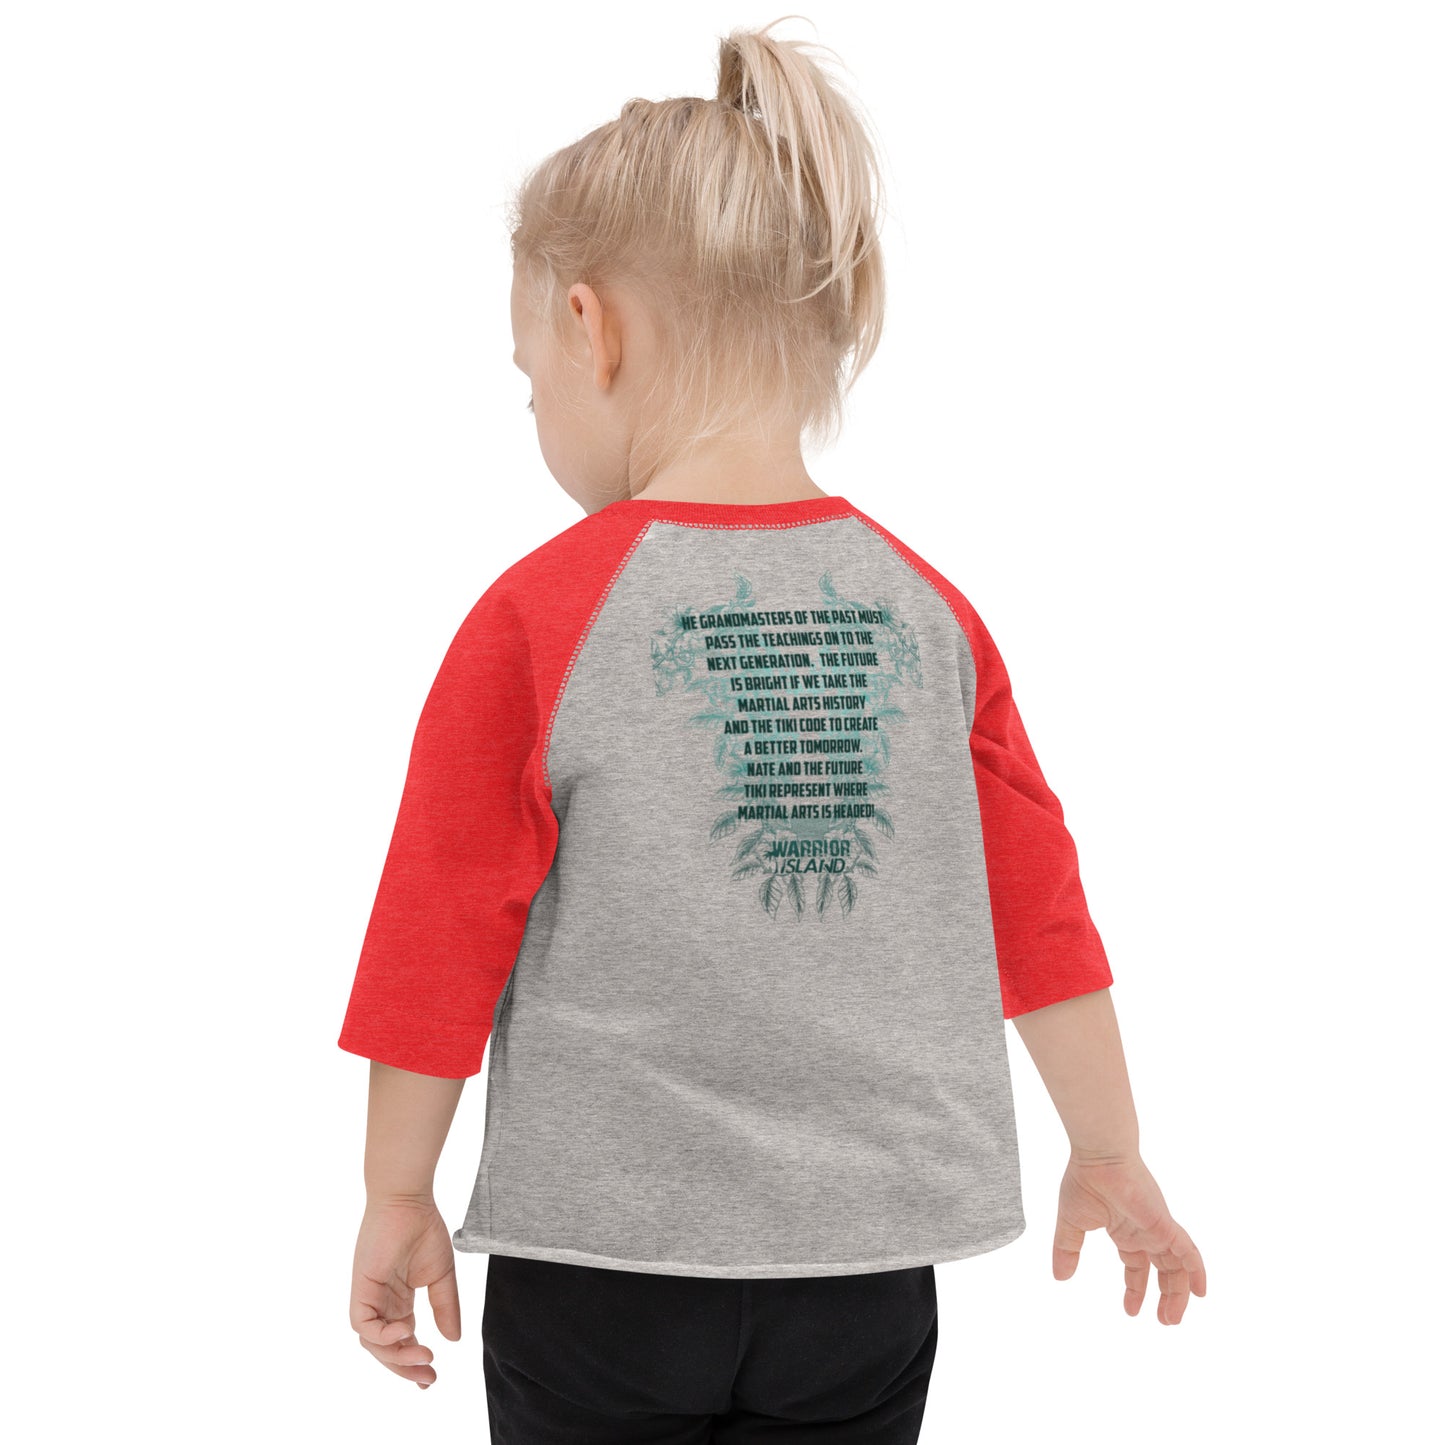 Future Tiki Toddler baseball shirt